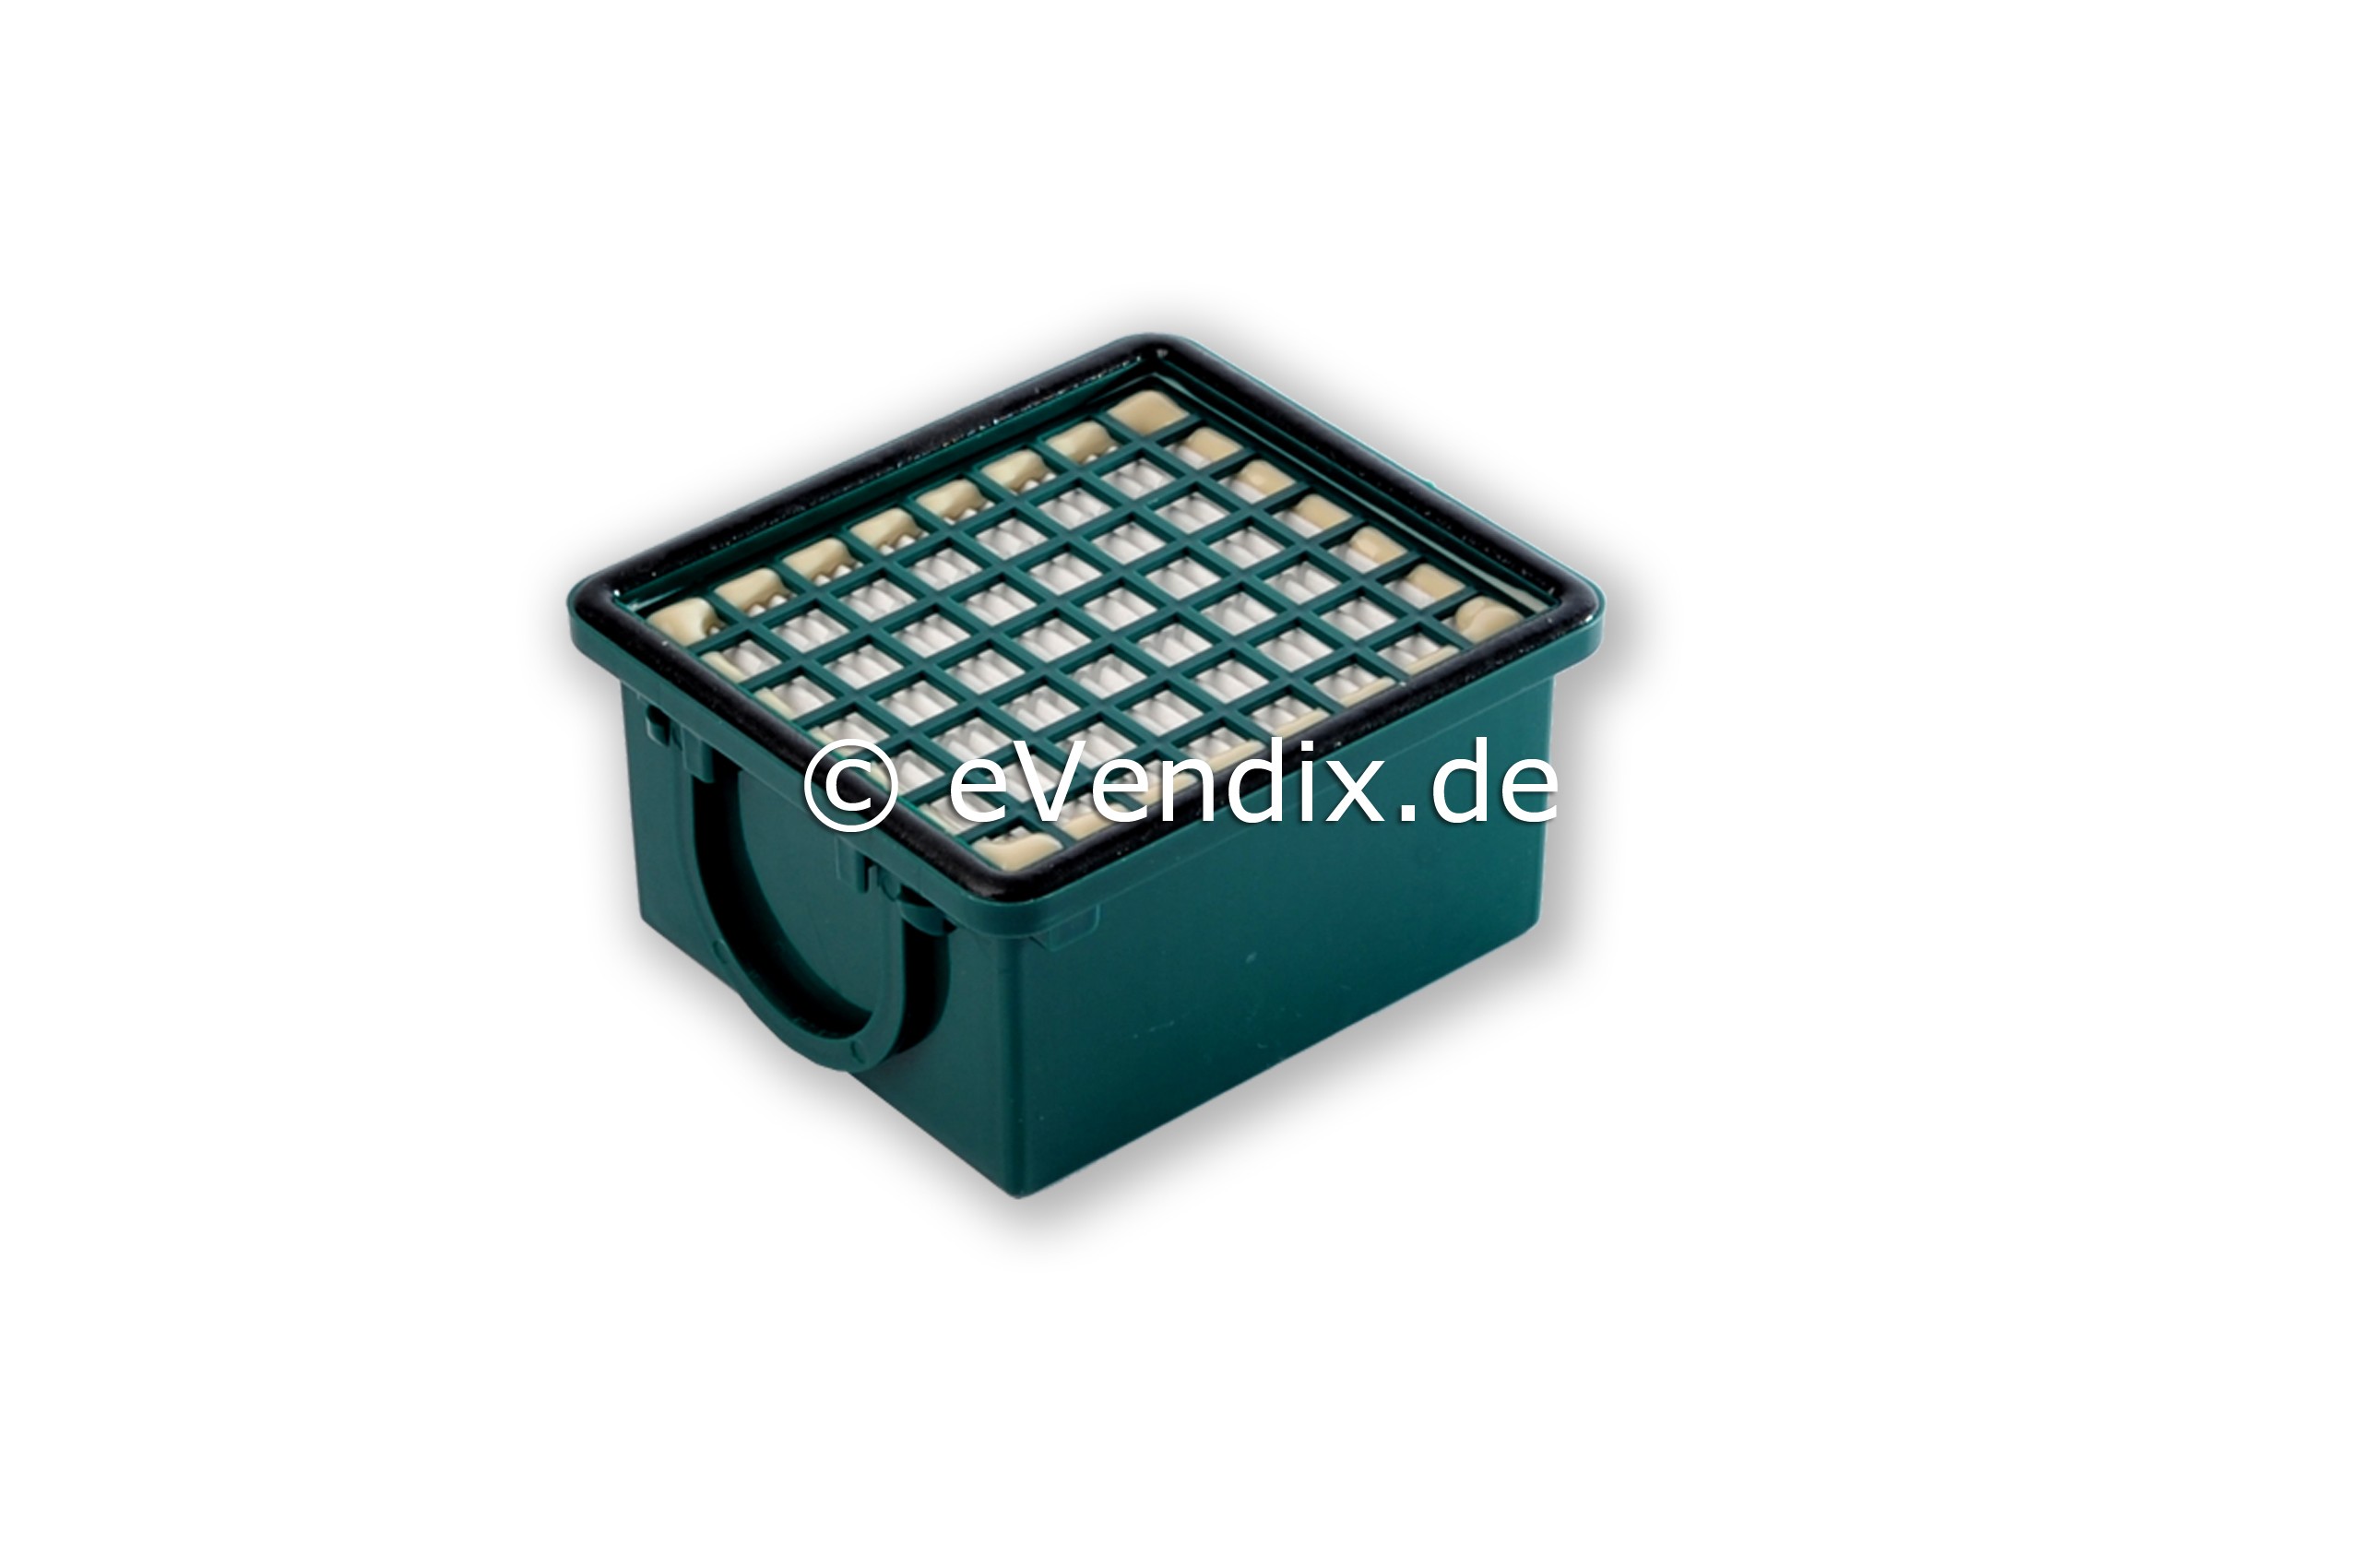 2 x Hygiene-Mikrofilter HEPA Filter kompatibel mit Vorwerk Kobold VK 130, VK 131, SC von eVendix®